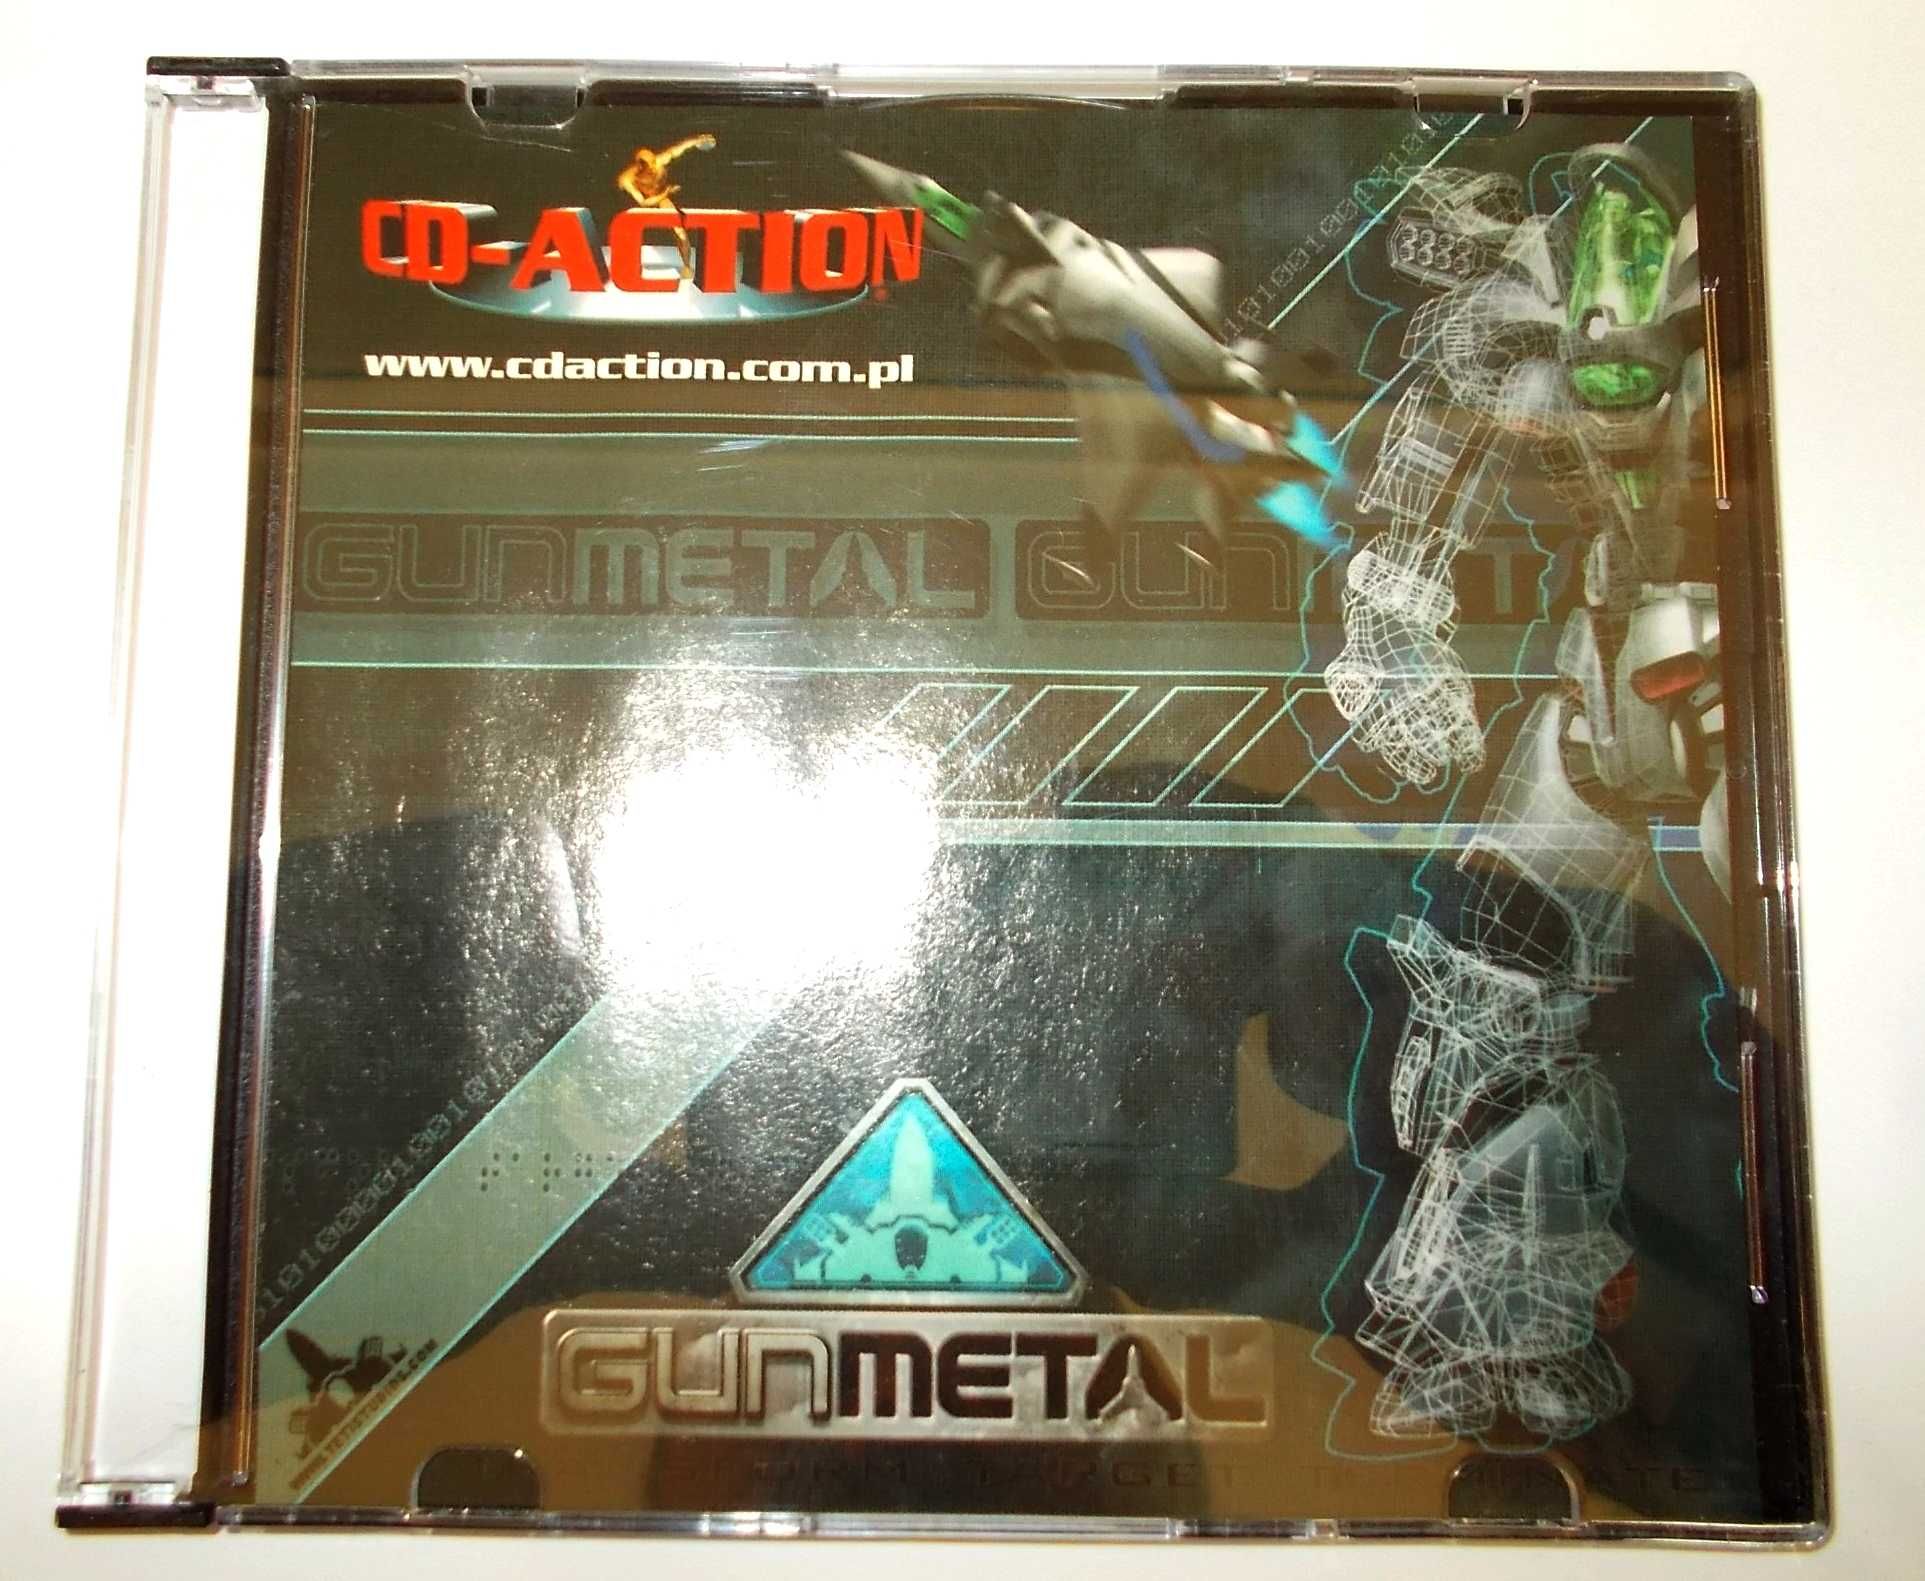 Gra PC - Gun Metal - CD Action 92 (11/2003)